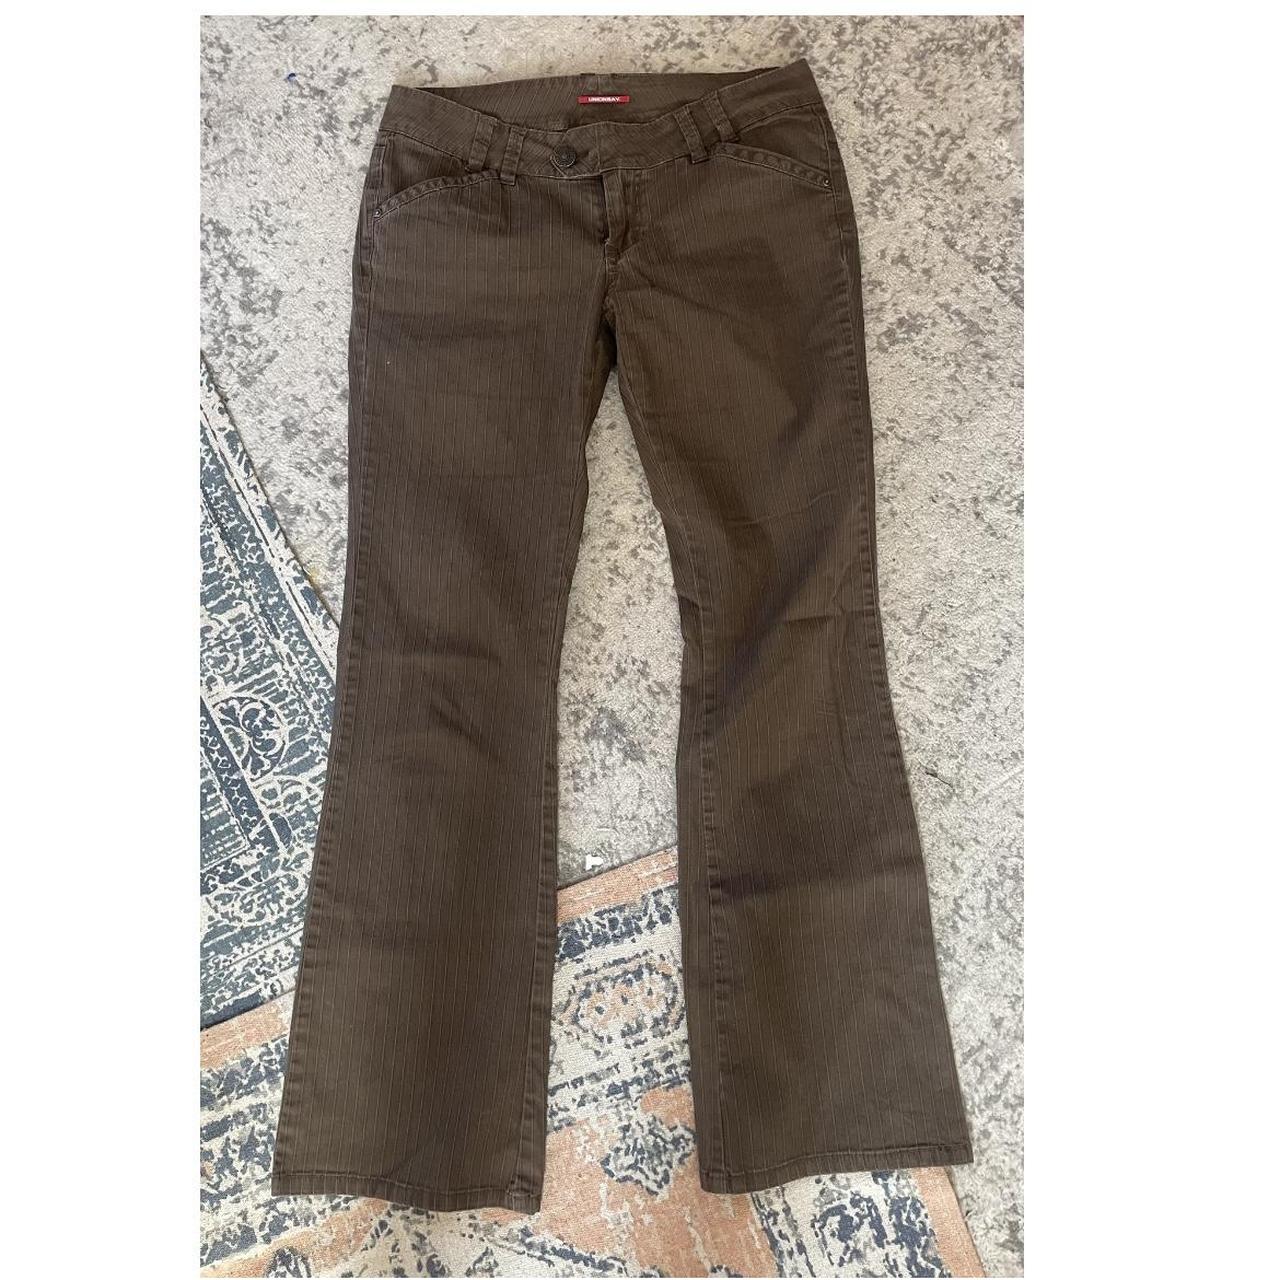 vintage lowrise pants brown size 28-29 - Depop